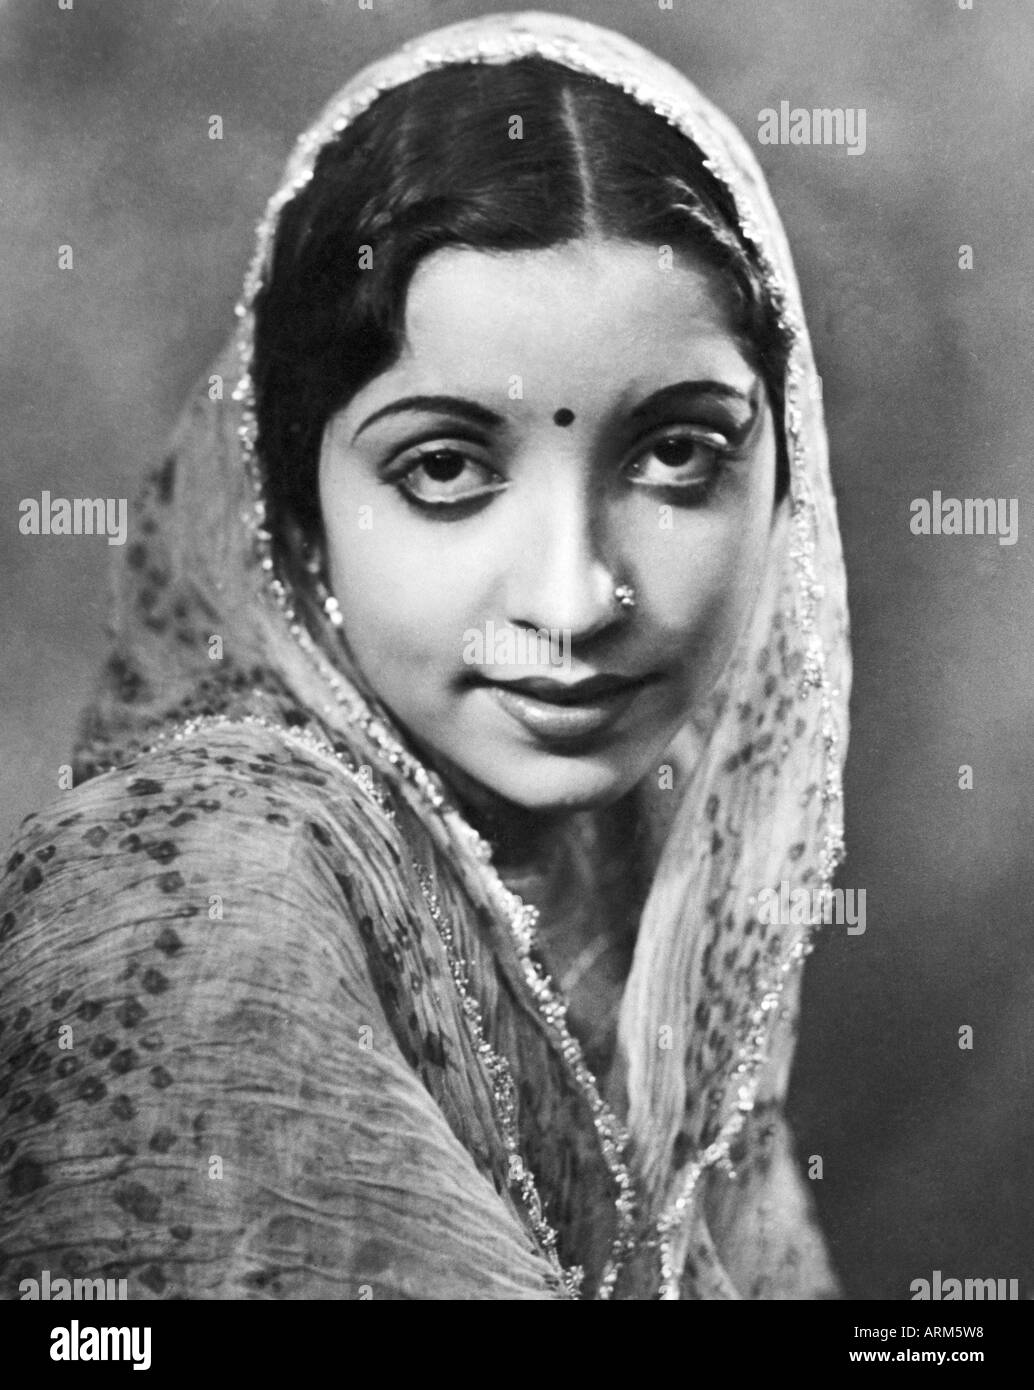 VRB101235 femme indienne en sari à la caméra au portrait en studio Mussorie Uttar Pradesh India 1940 Banque D'Images